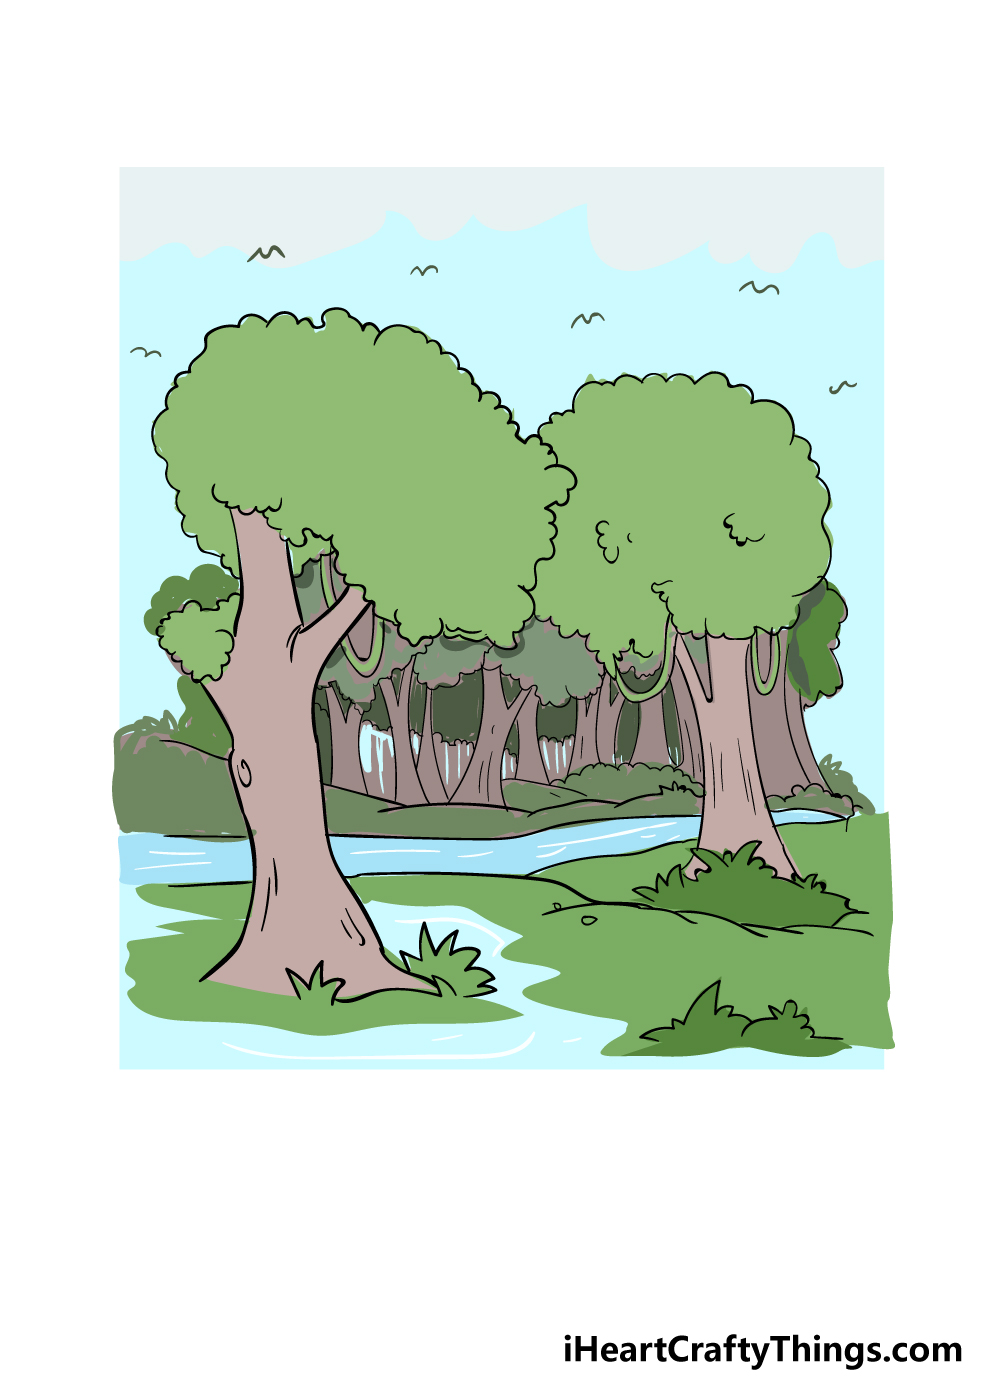 Hướng dẫn cách vẽ khu rừng đơn giản với 6 bước cơ bản